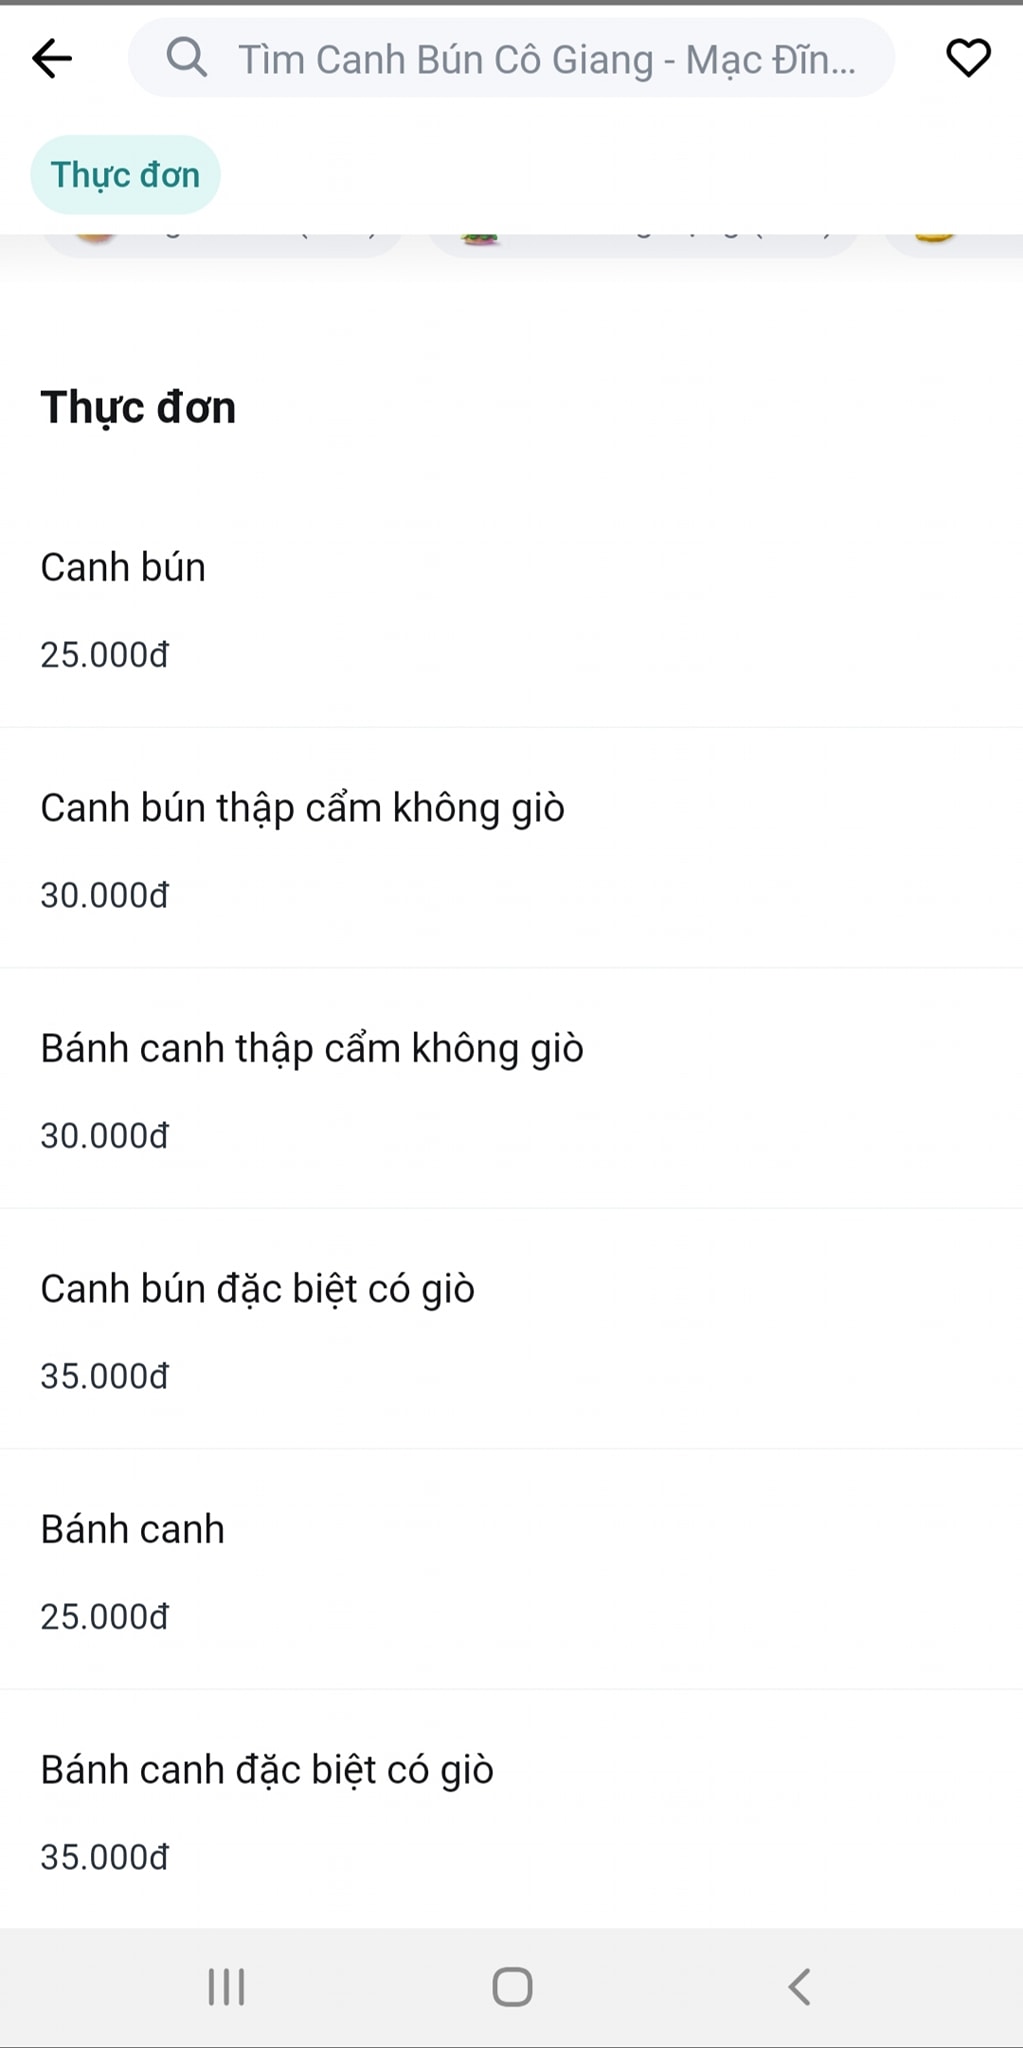 Canh bún - Bánh canh - 02 Mạc Đĩnh Chi, Vũng Tàu